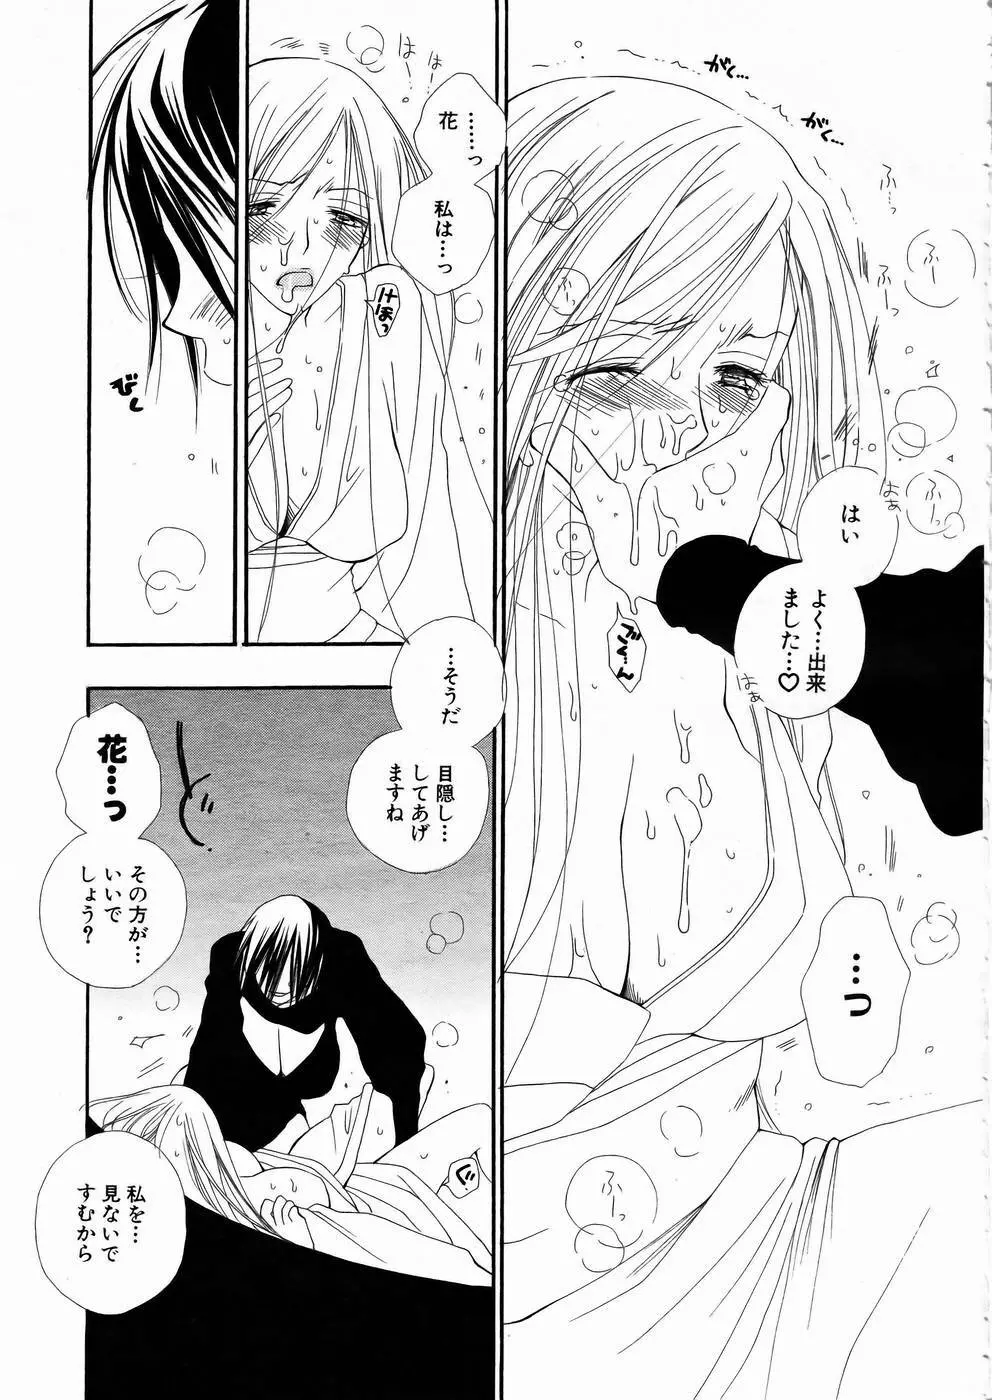 少女剣客凌辱コミック Vol.01 くノ一斬! 12ページ